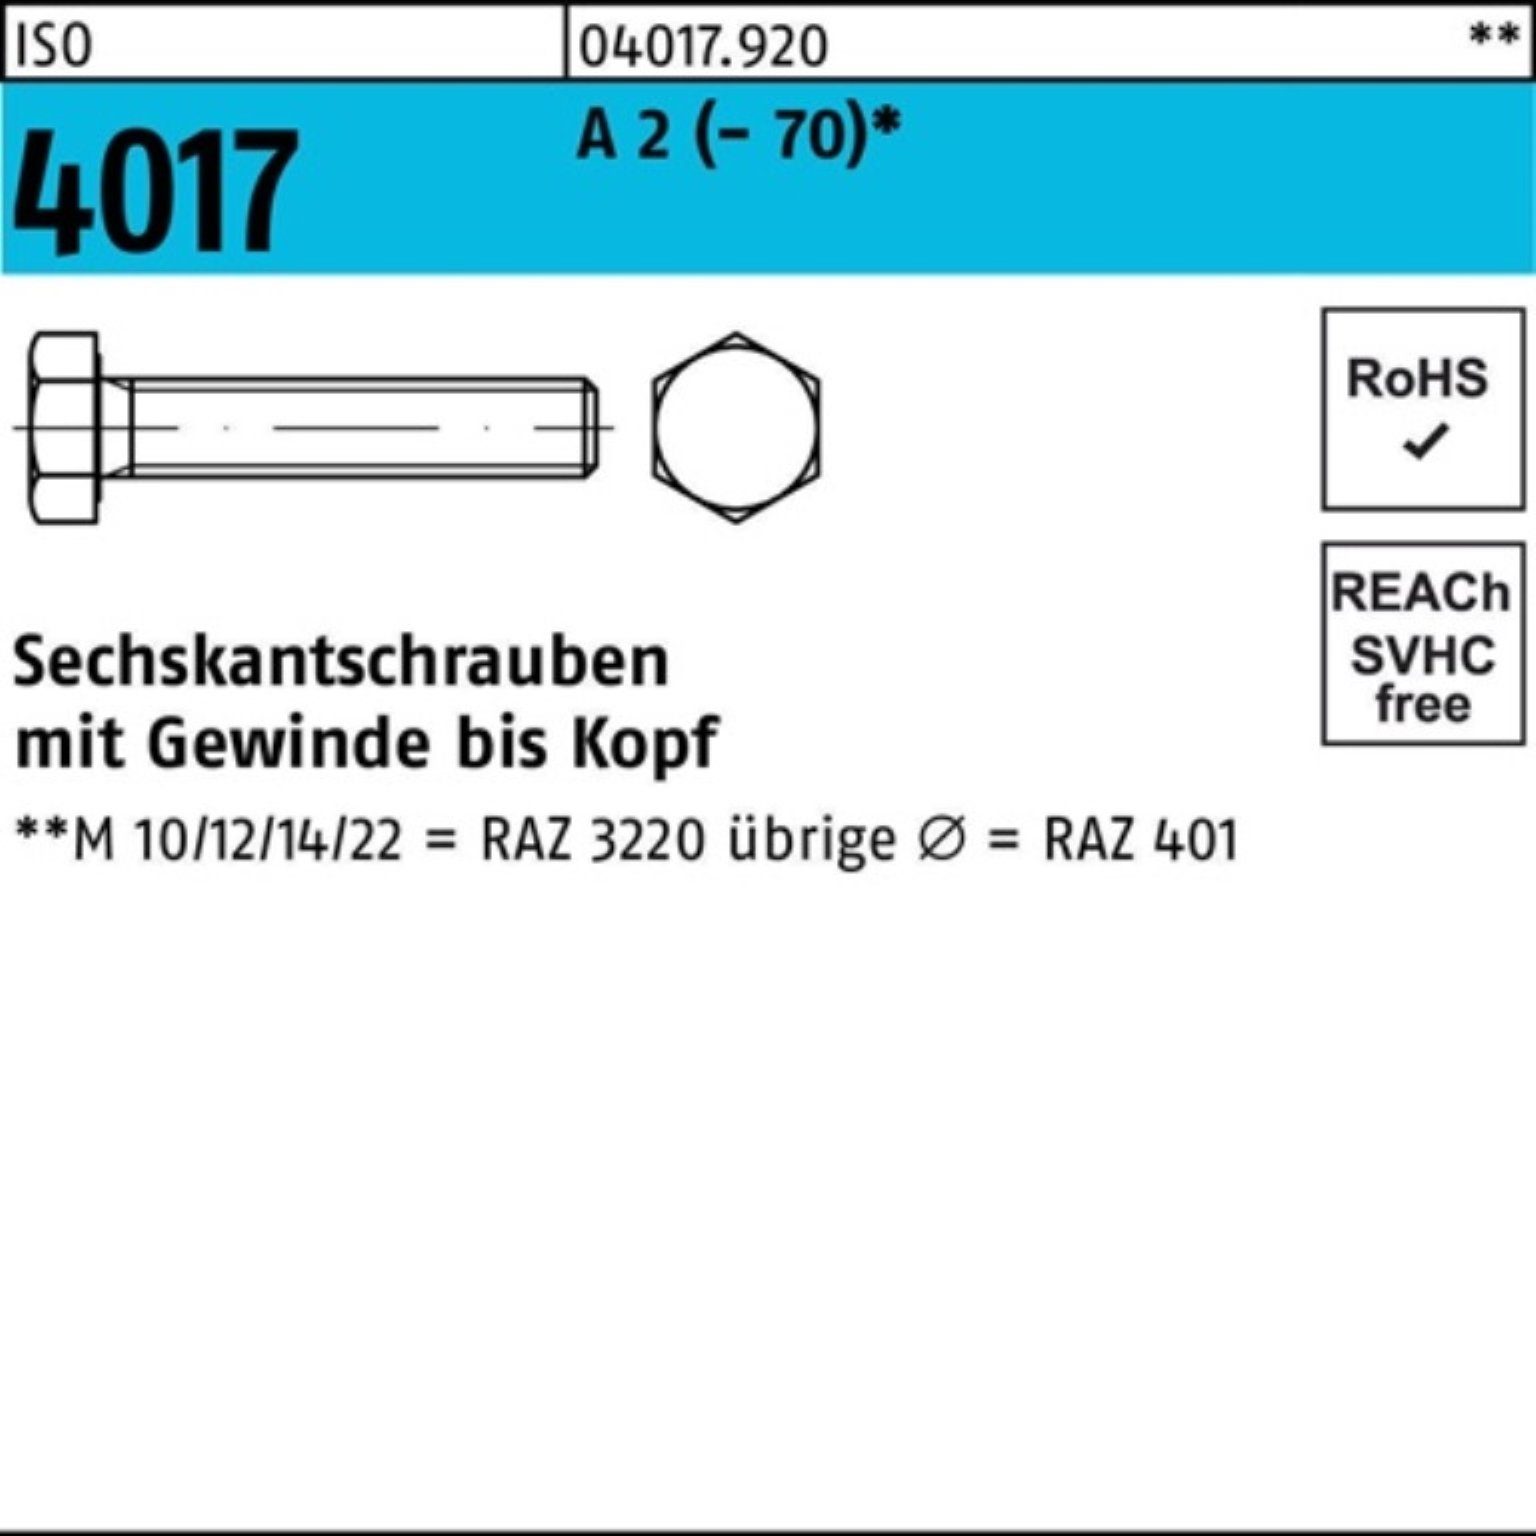 Bufab Sechskantschraube 100er Pack Sechskantschraube ISO 4017 VG M16x 40 A 2 (70) 50 Stück